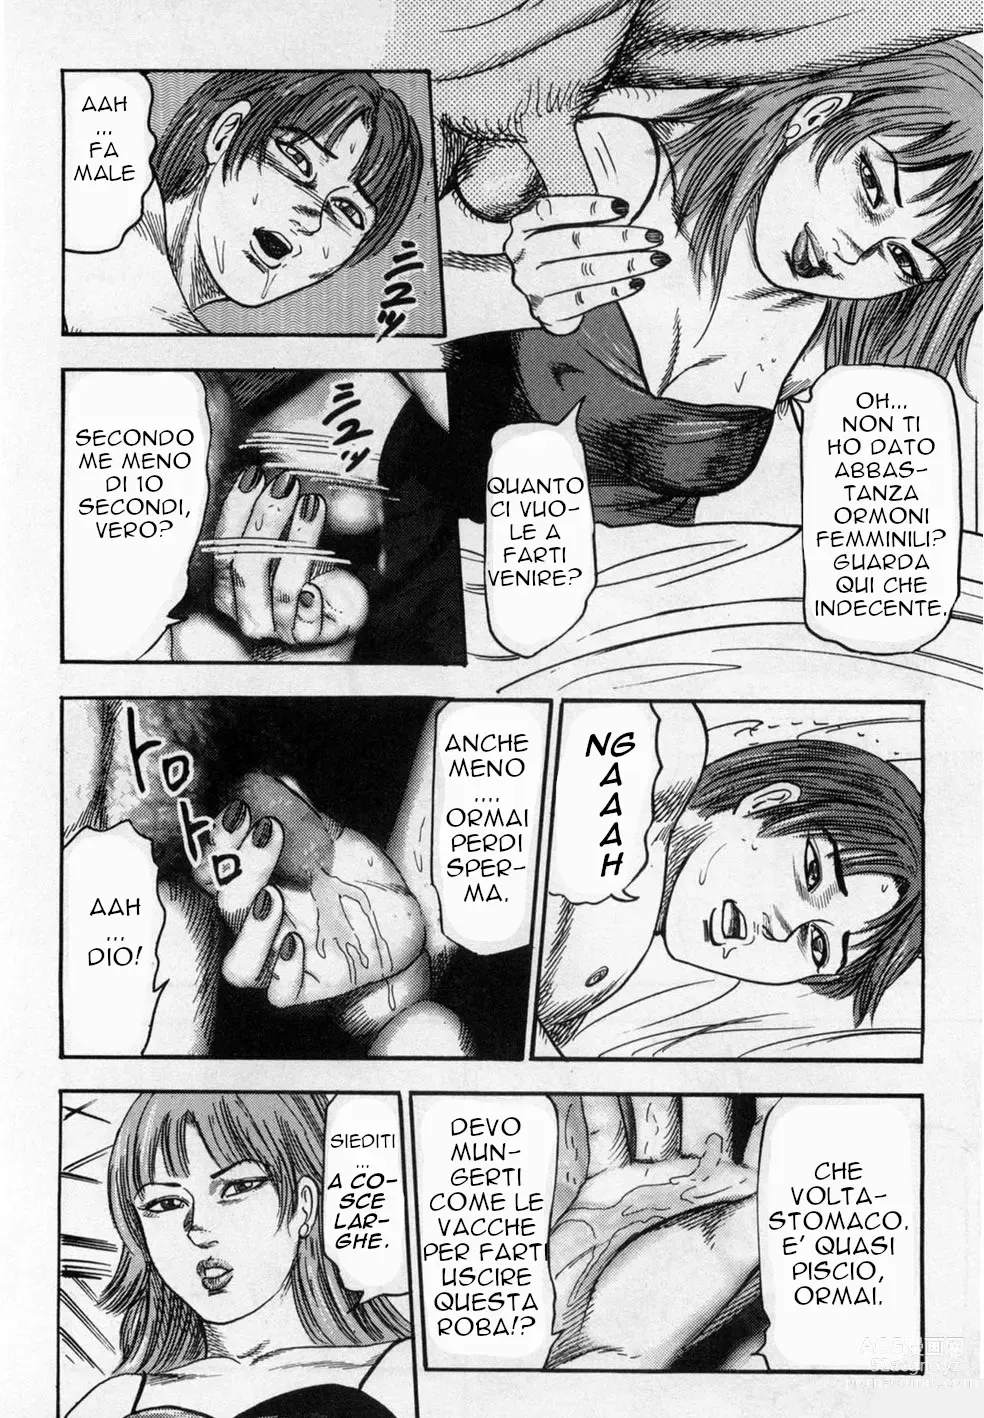 Page 135 of manga Random Stuff by Tomomi Remixed